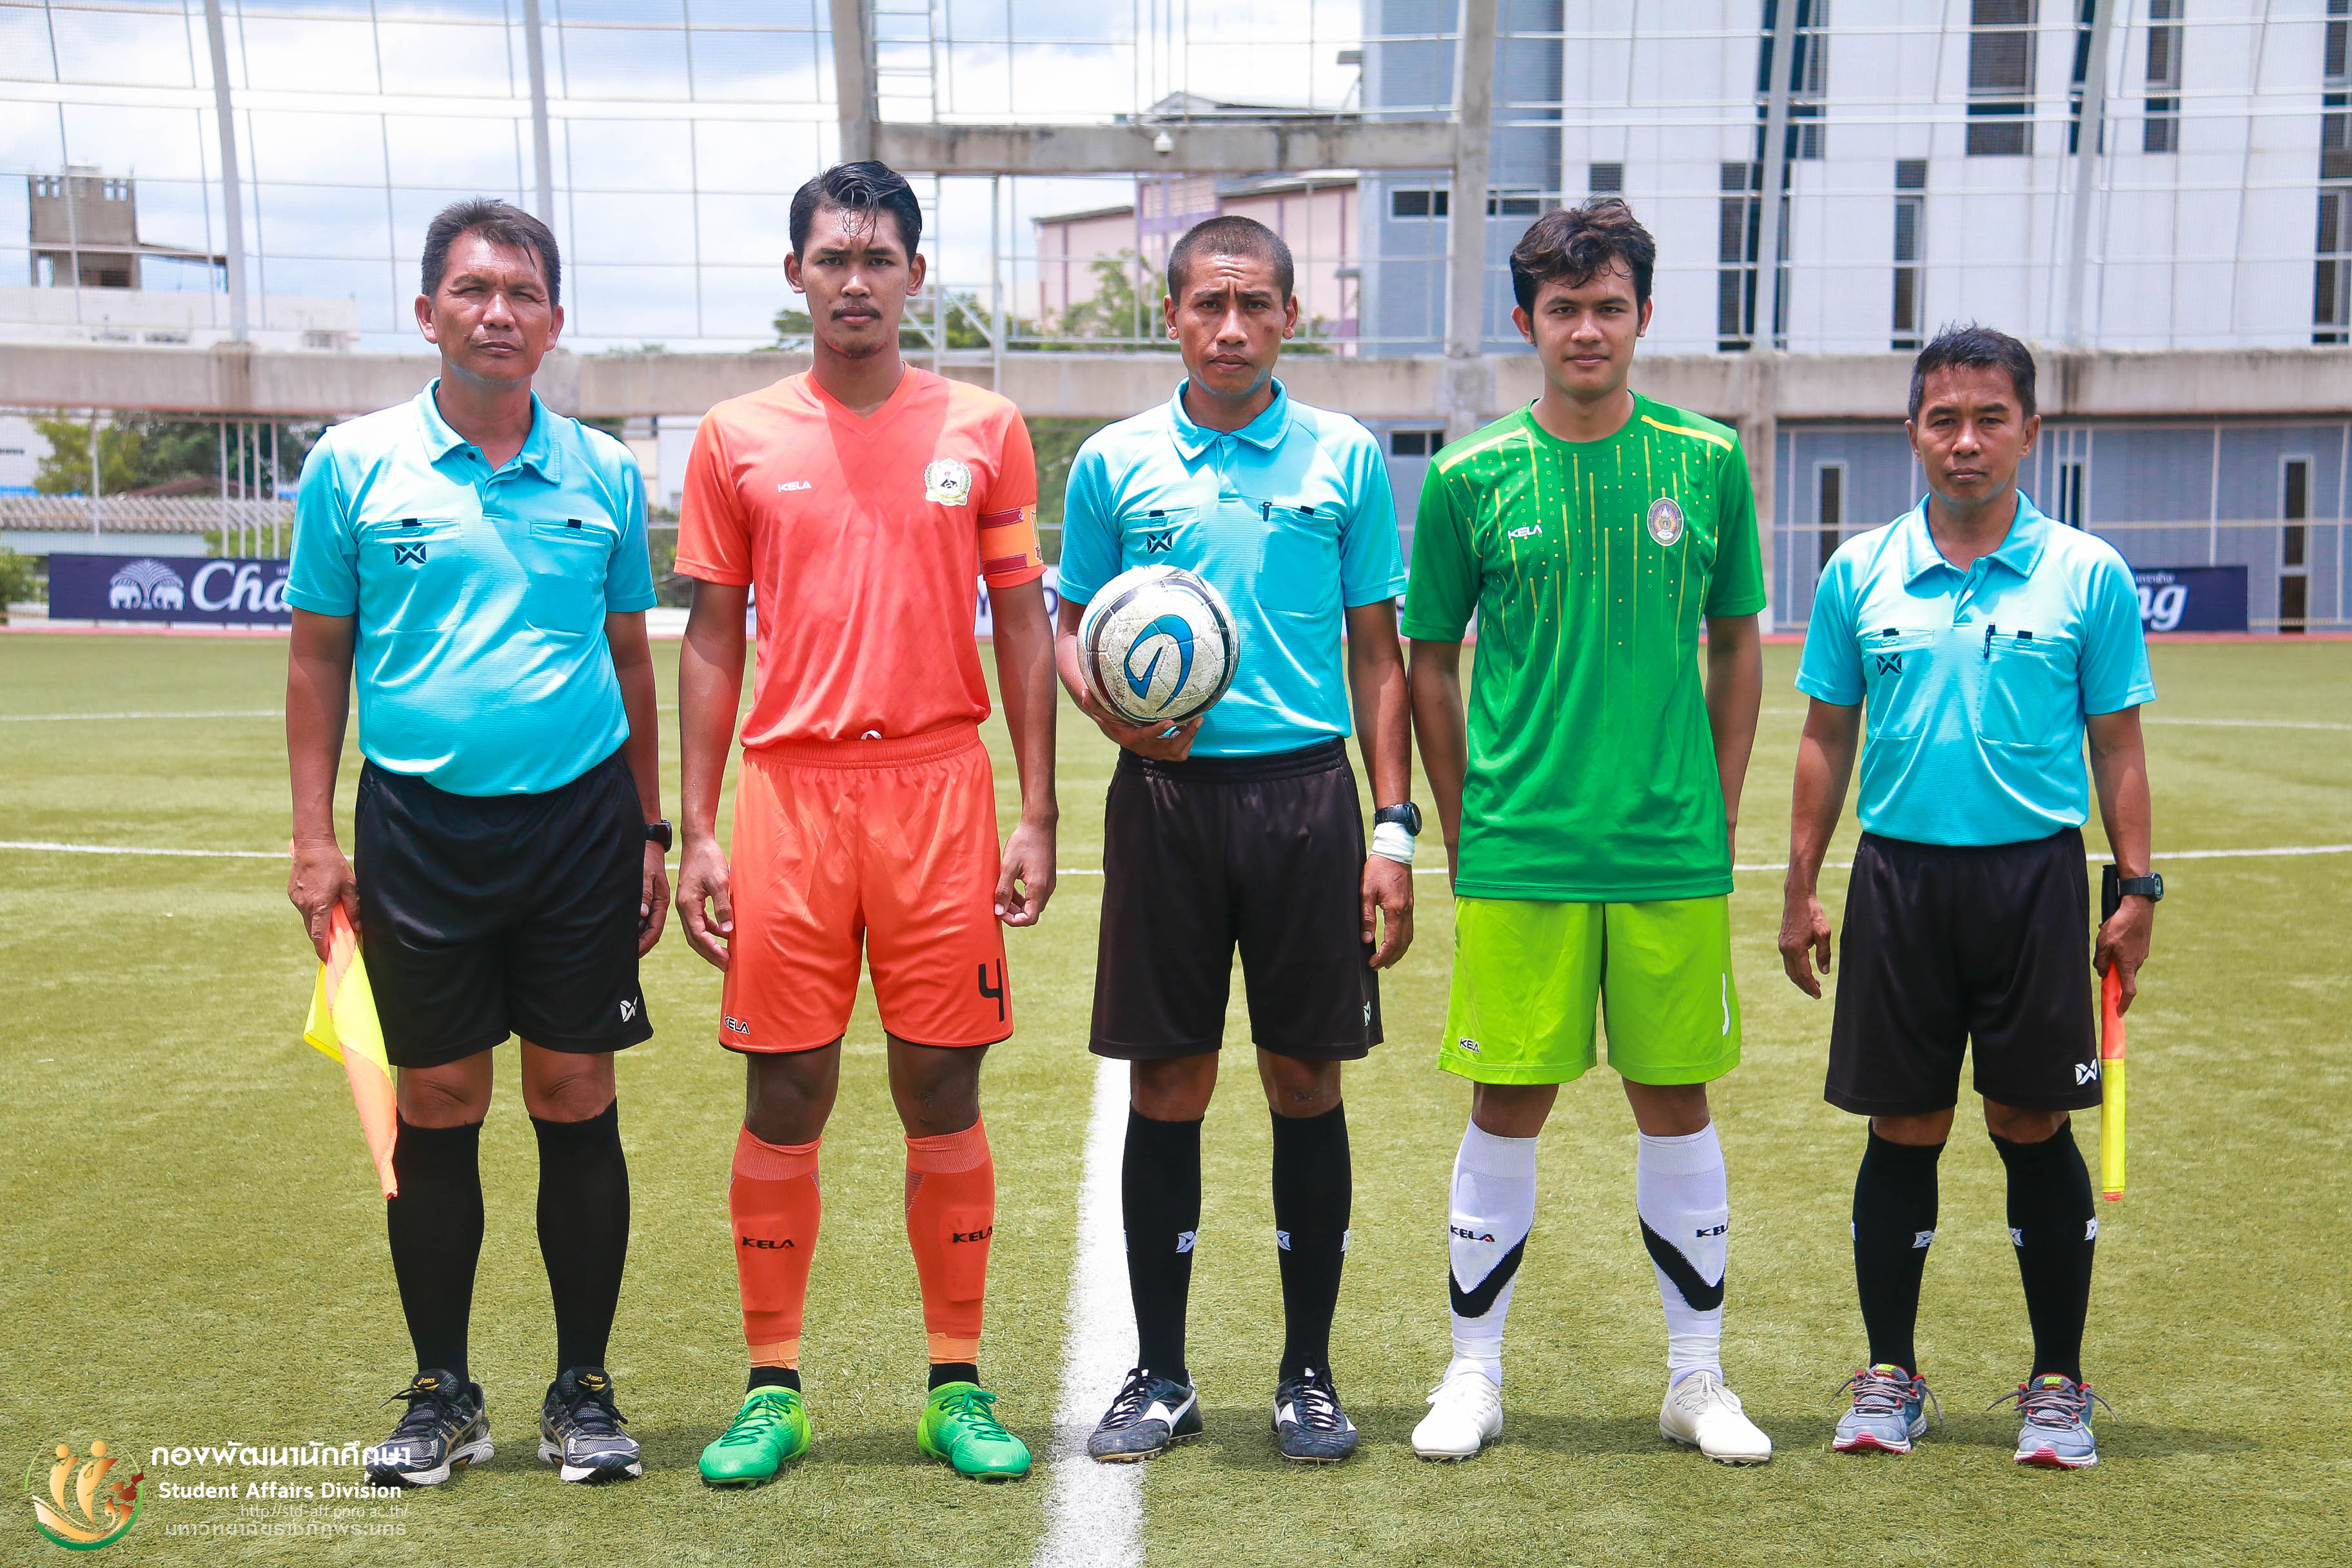 5 สิงหาคม 2562 การแข่งขันฟุตบอลอุดมศึกษา university tournament  ครั้งที่ 6 ณ สนามฟุตบอล (หญ้าเทียม) อาคารปฏิบัติการวิทยาศาสตร์การกีฬา มหาวิทยาลัยเทคโนโลยีพระจอมเกล้าพระนครเหนือ